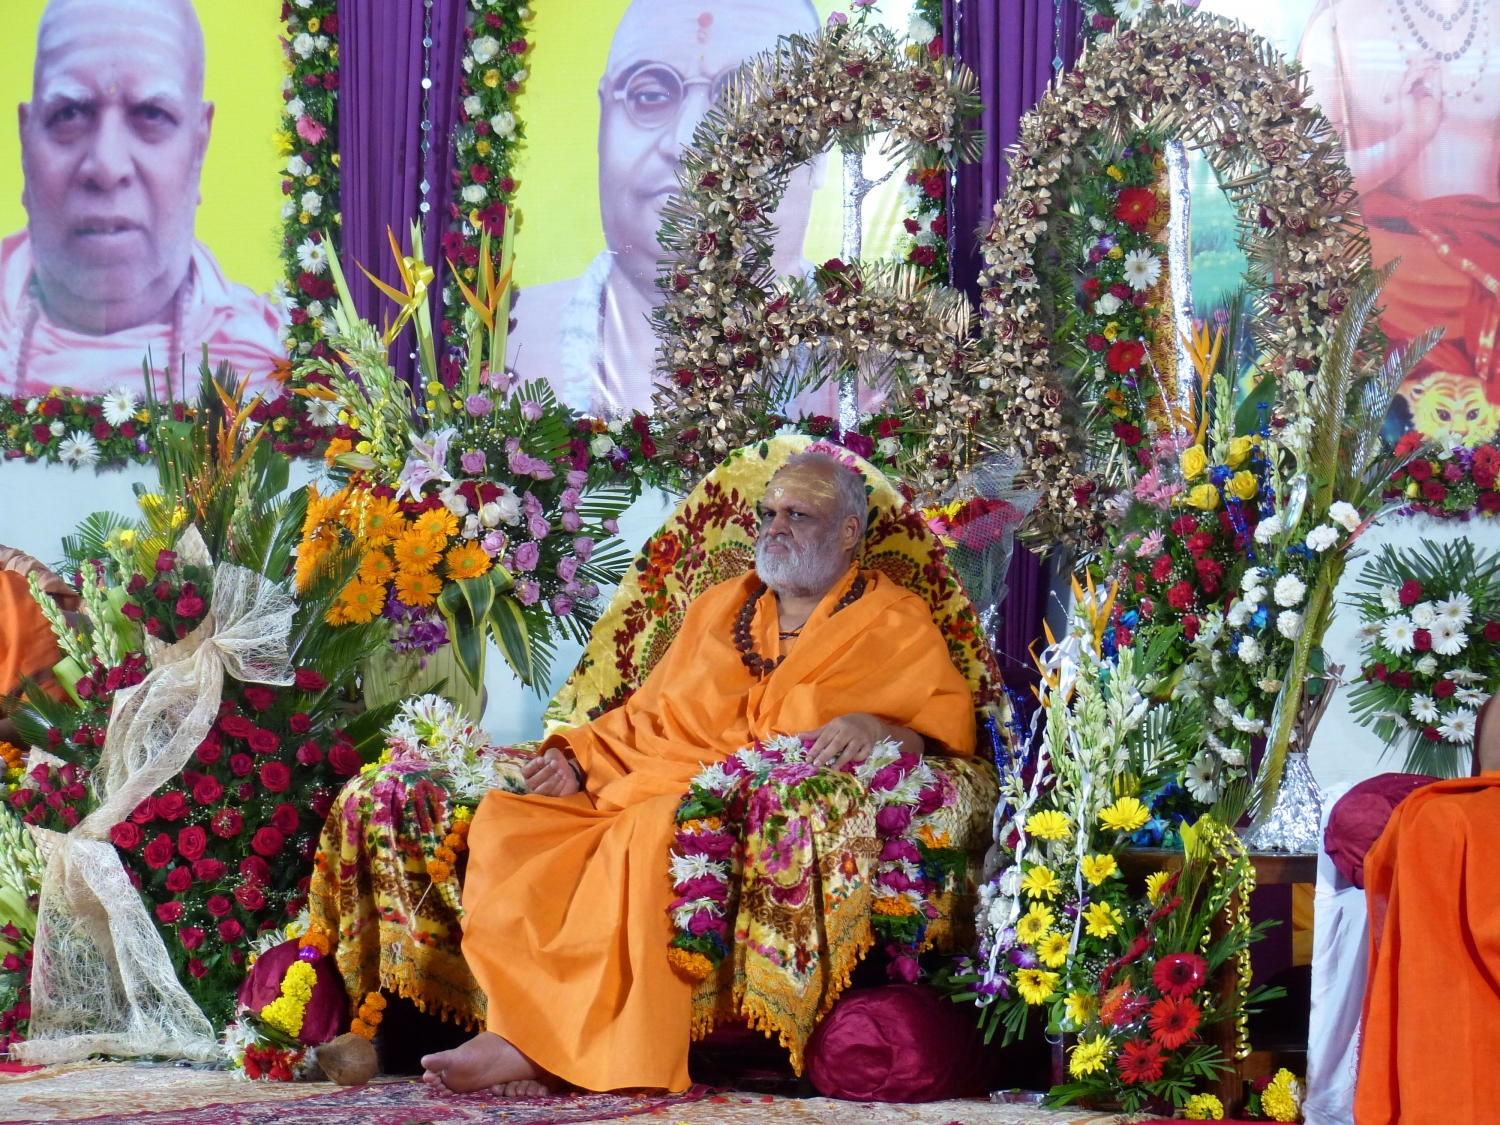 60th Anniversary of Mahá Mandaleshvara H.H. Vishveshvaránanda Giri Jí Mahá Rája - Sanyasa Áshrama, Mumbai, India - 2014, July